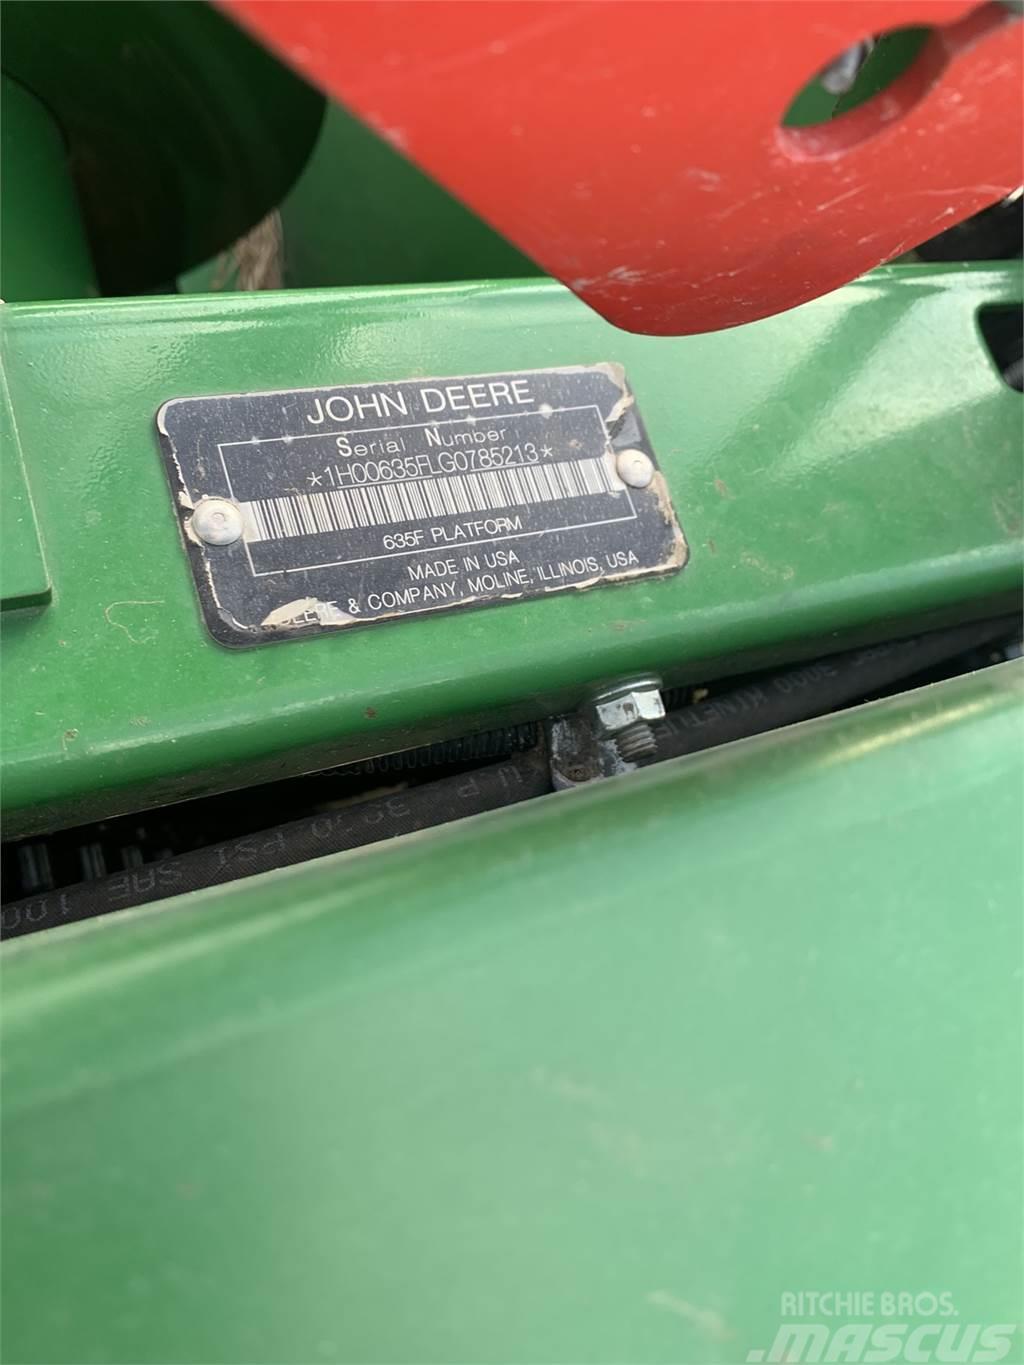 John Deere 635F Combine harvester spares & accessories